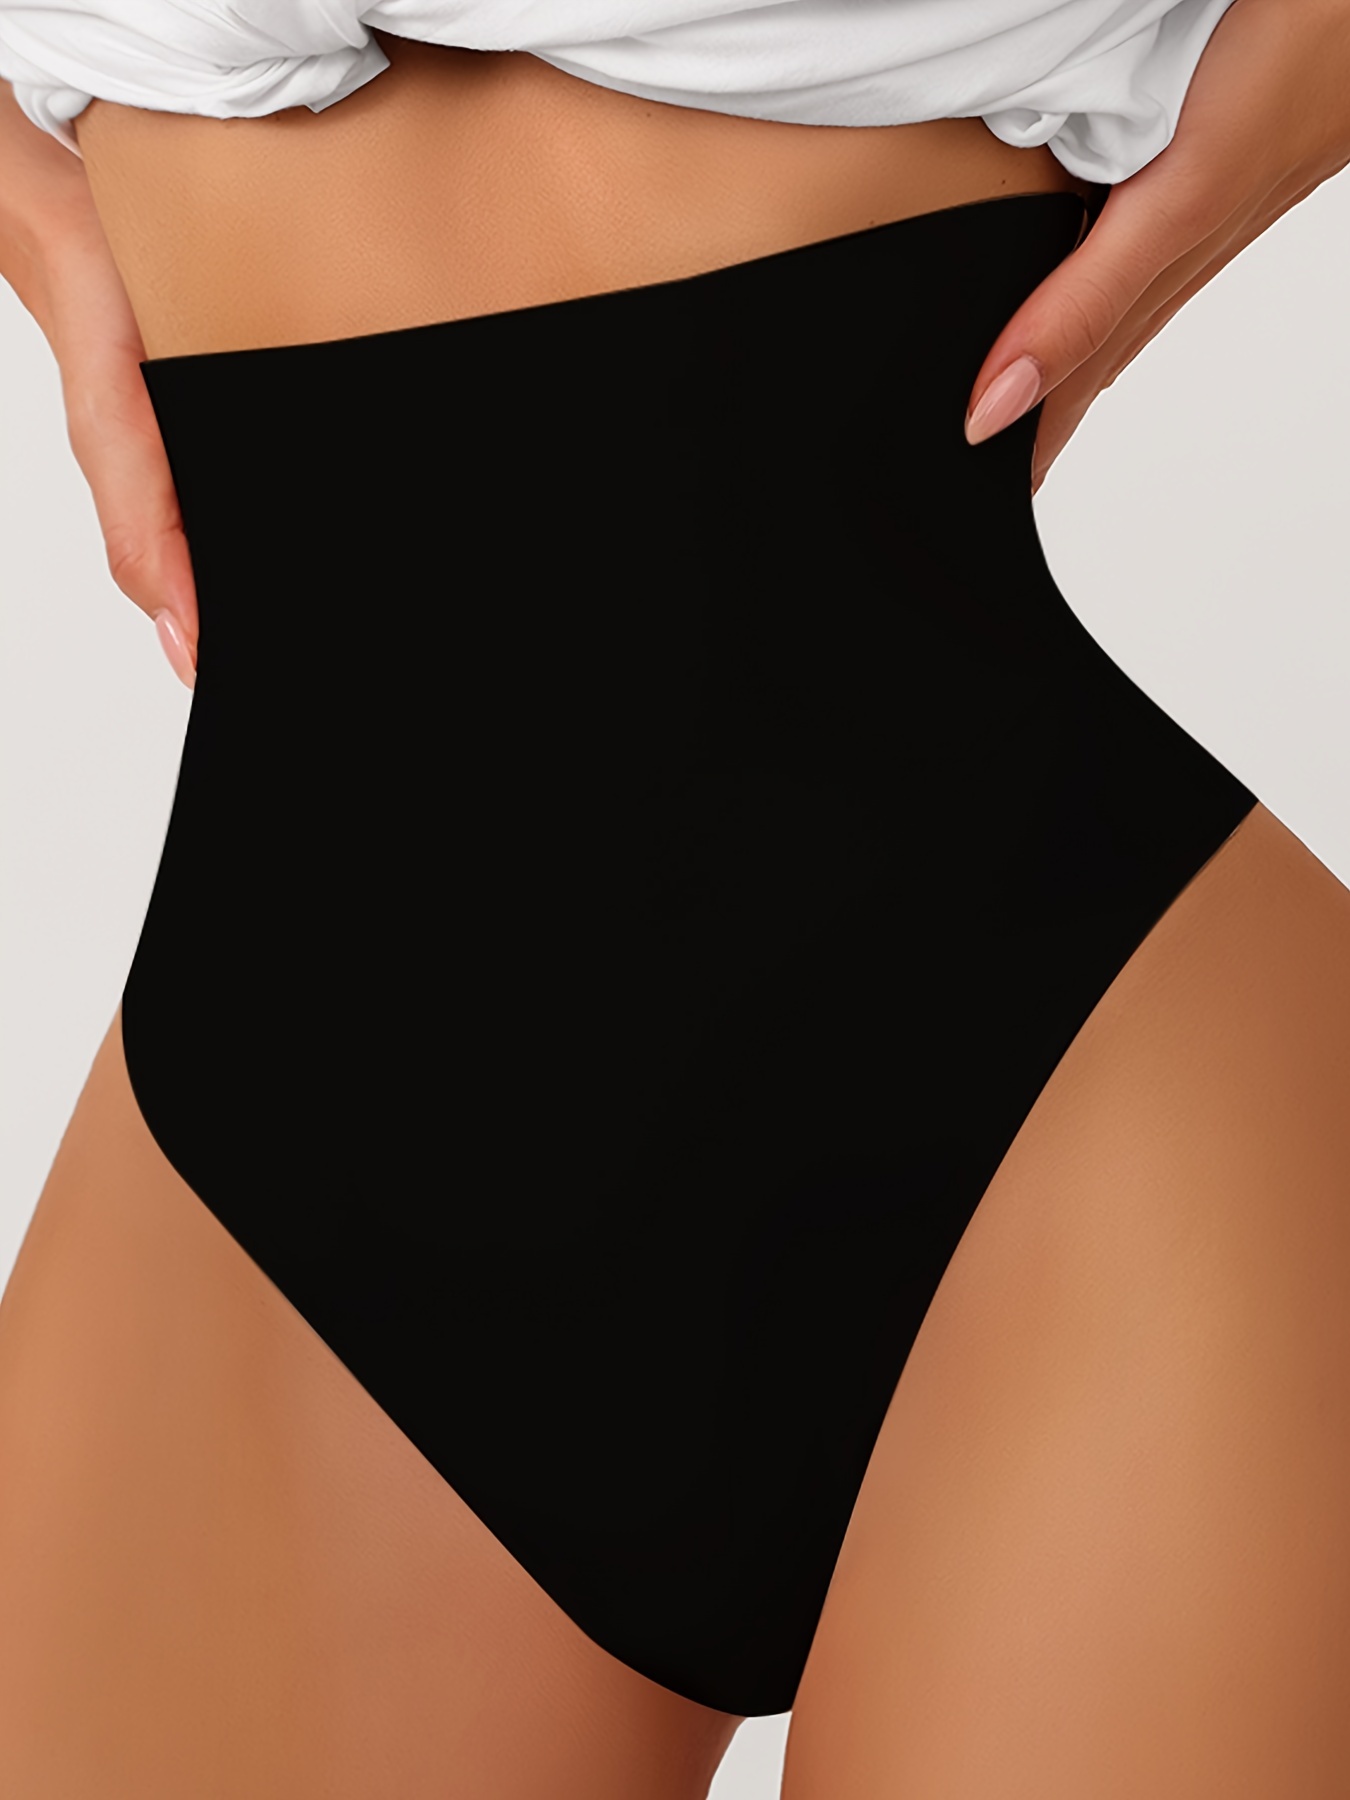 Black Slip Shaping Bodysuit, Slimming Backless Thong Body Shaper, Women's  Underwear & Shapewear